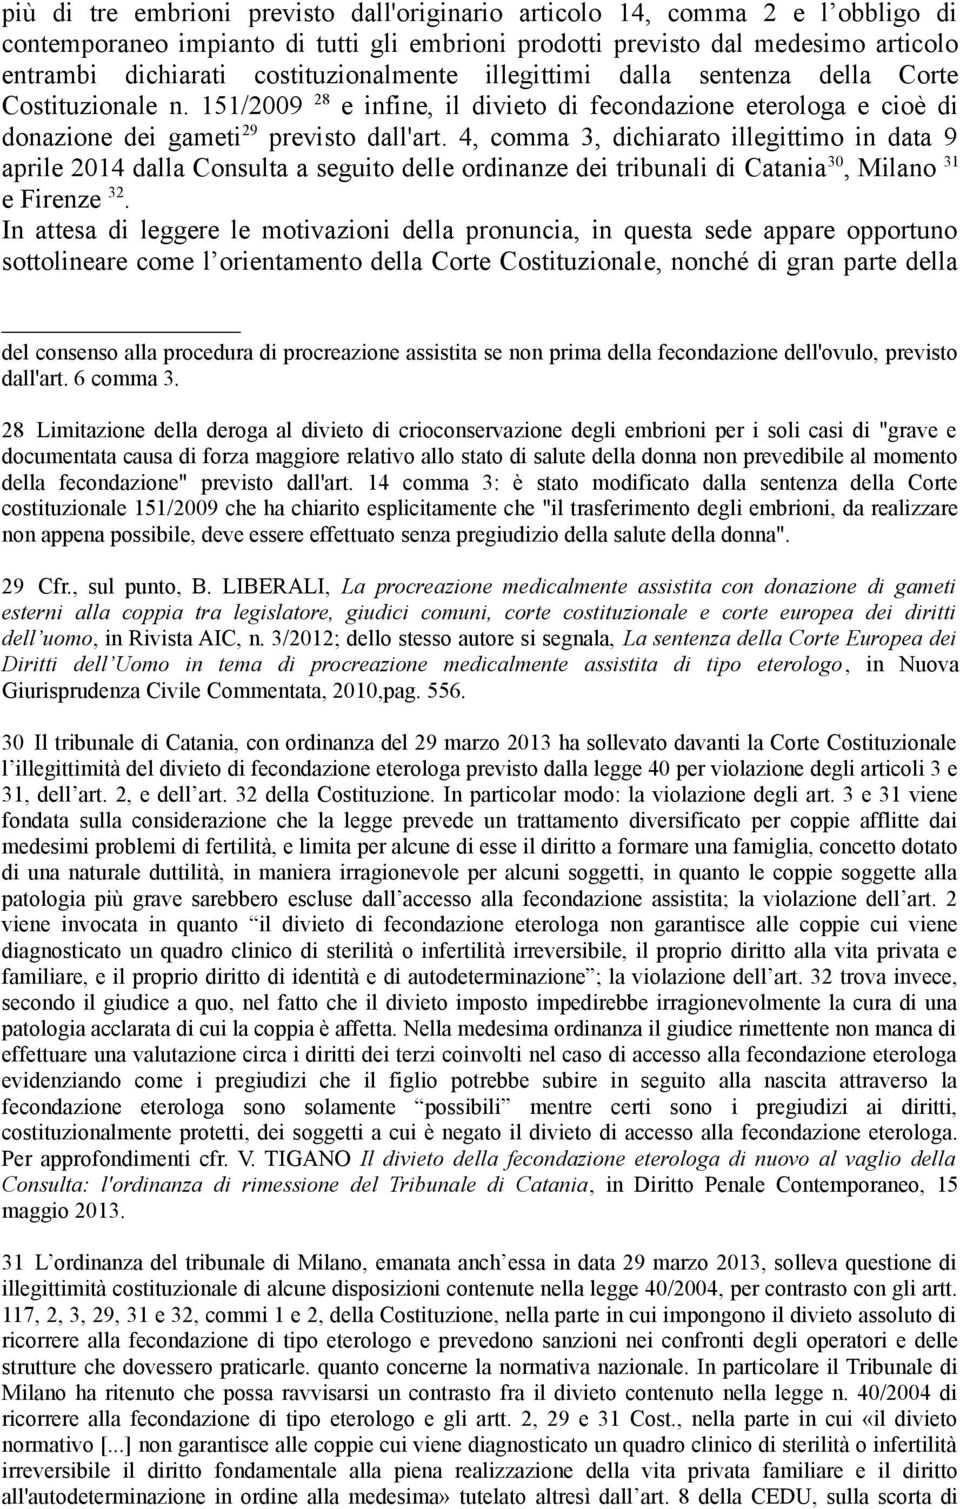 4, comma 3, dichiarato illegittimo in data 9 aprile 2014 dalla Consulta a seguito delle ordinanze dei tribunali di Catania 30, Milano 31 e Firenze 32.